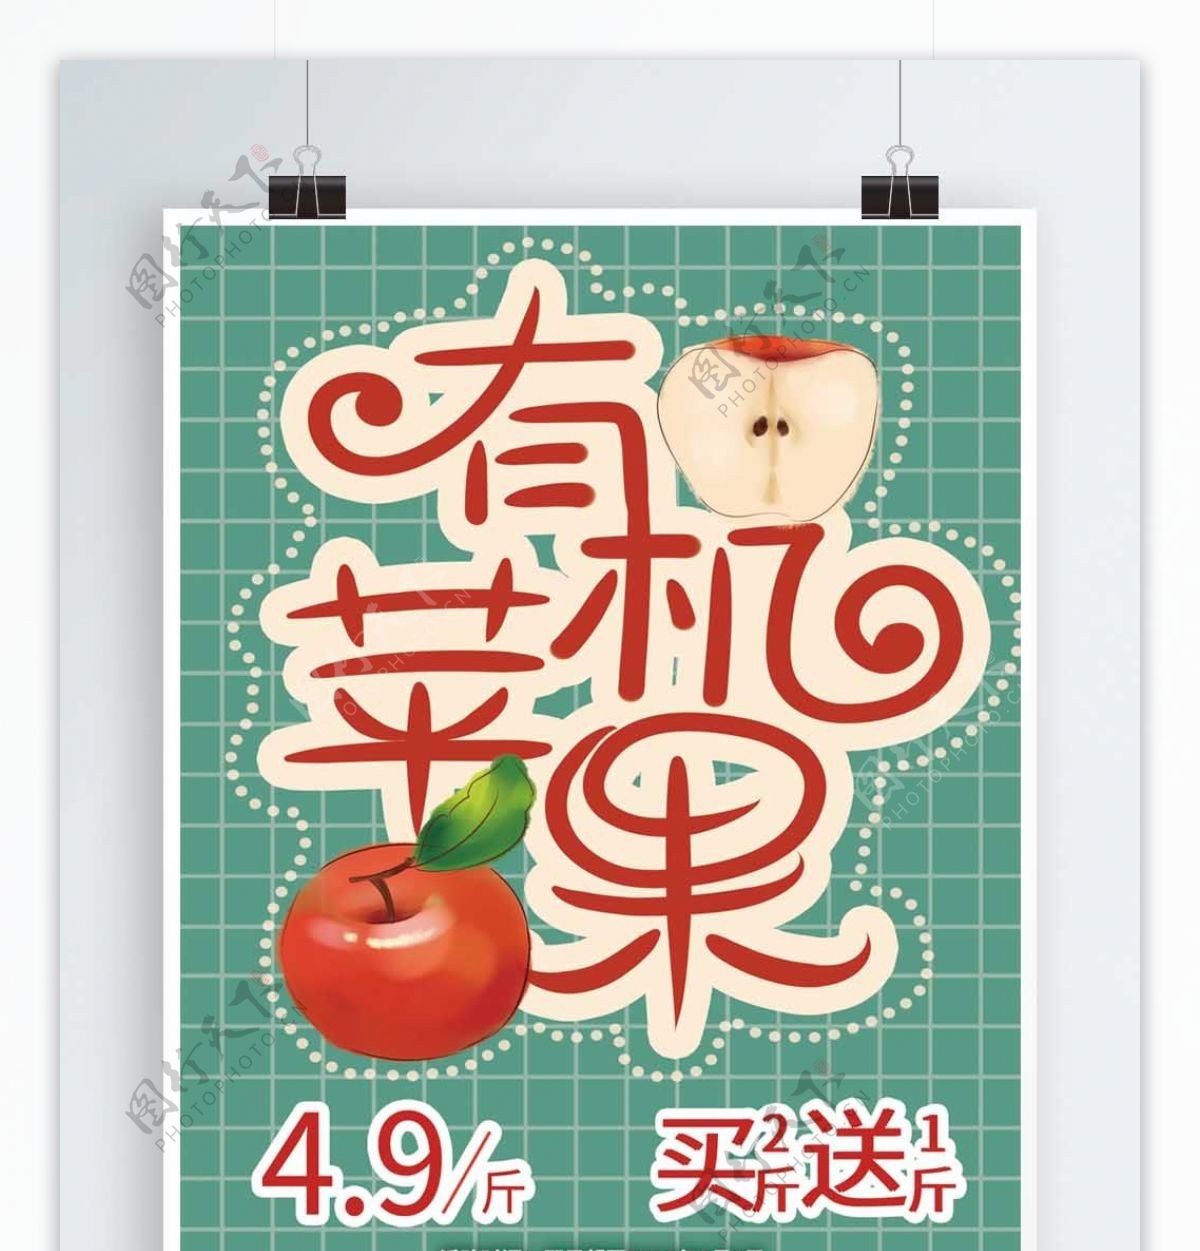 原创小清新苹果促销海报